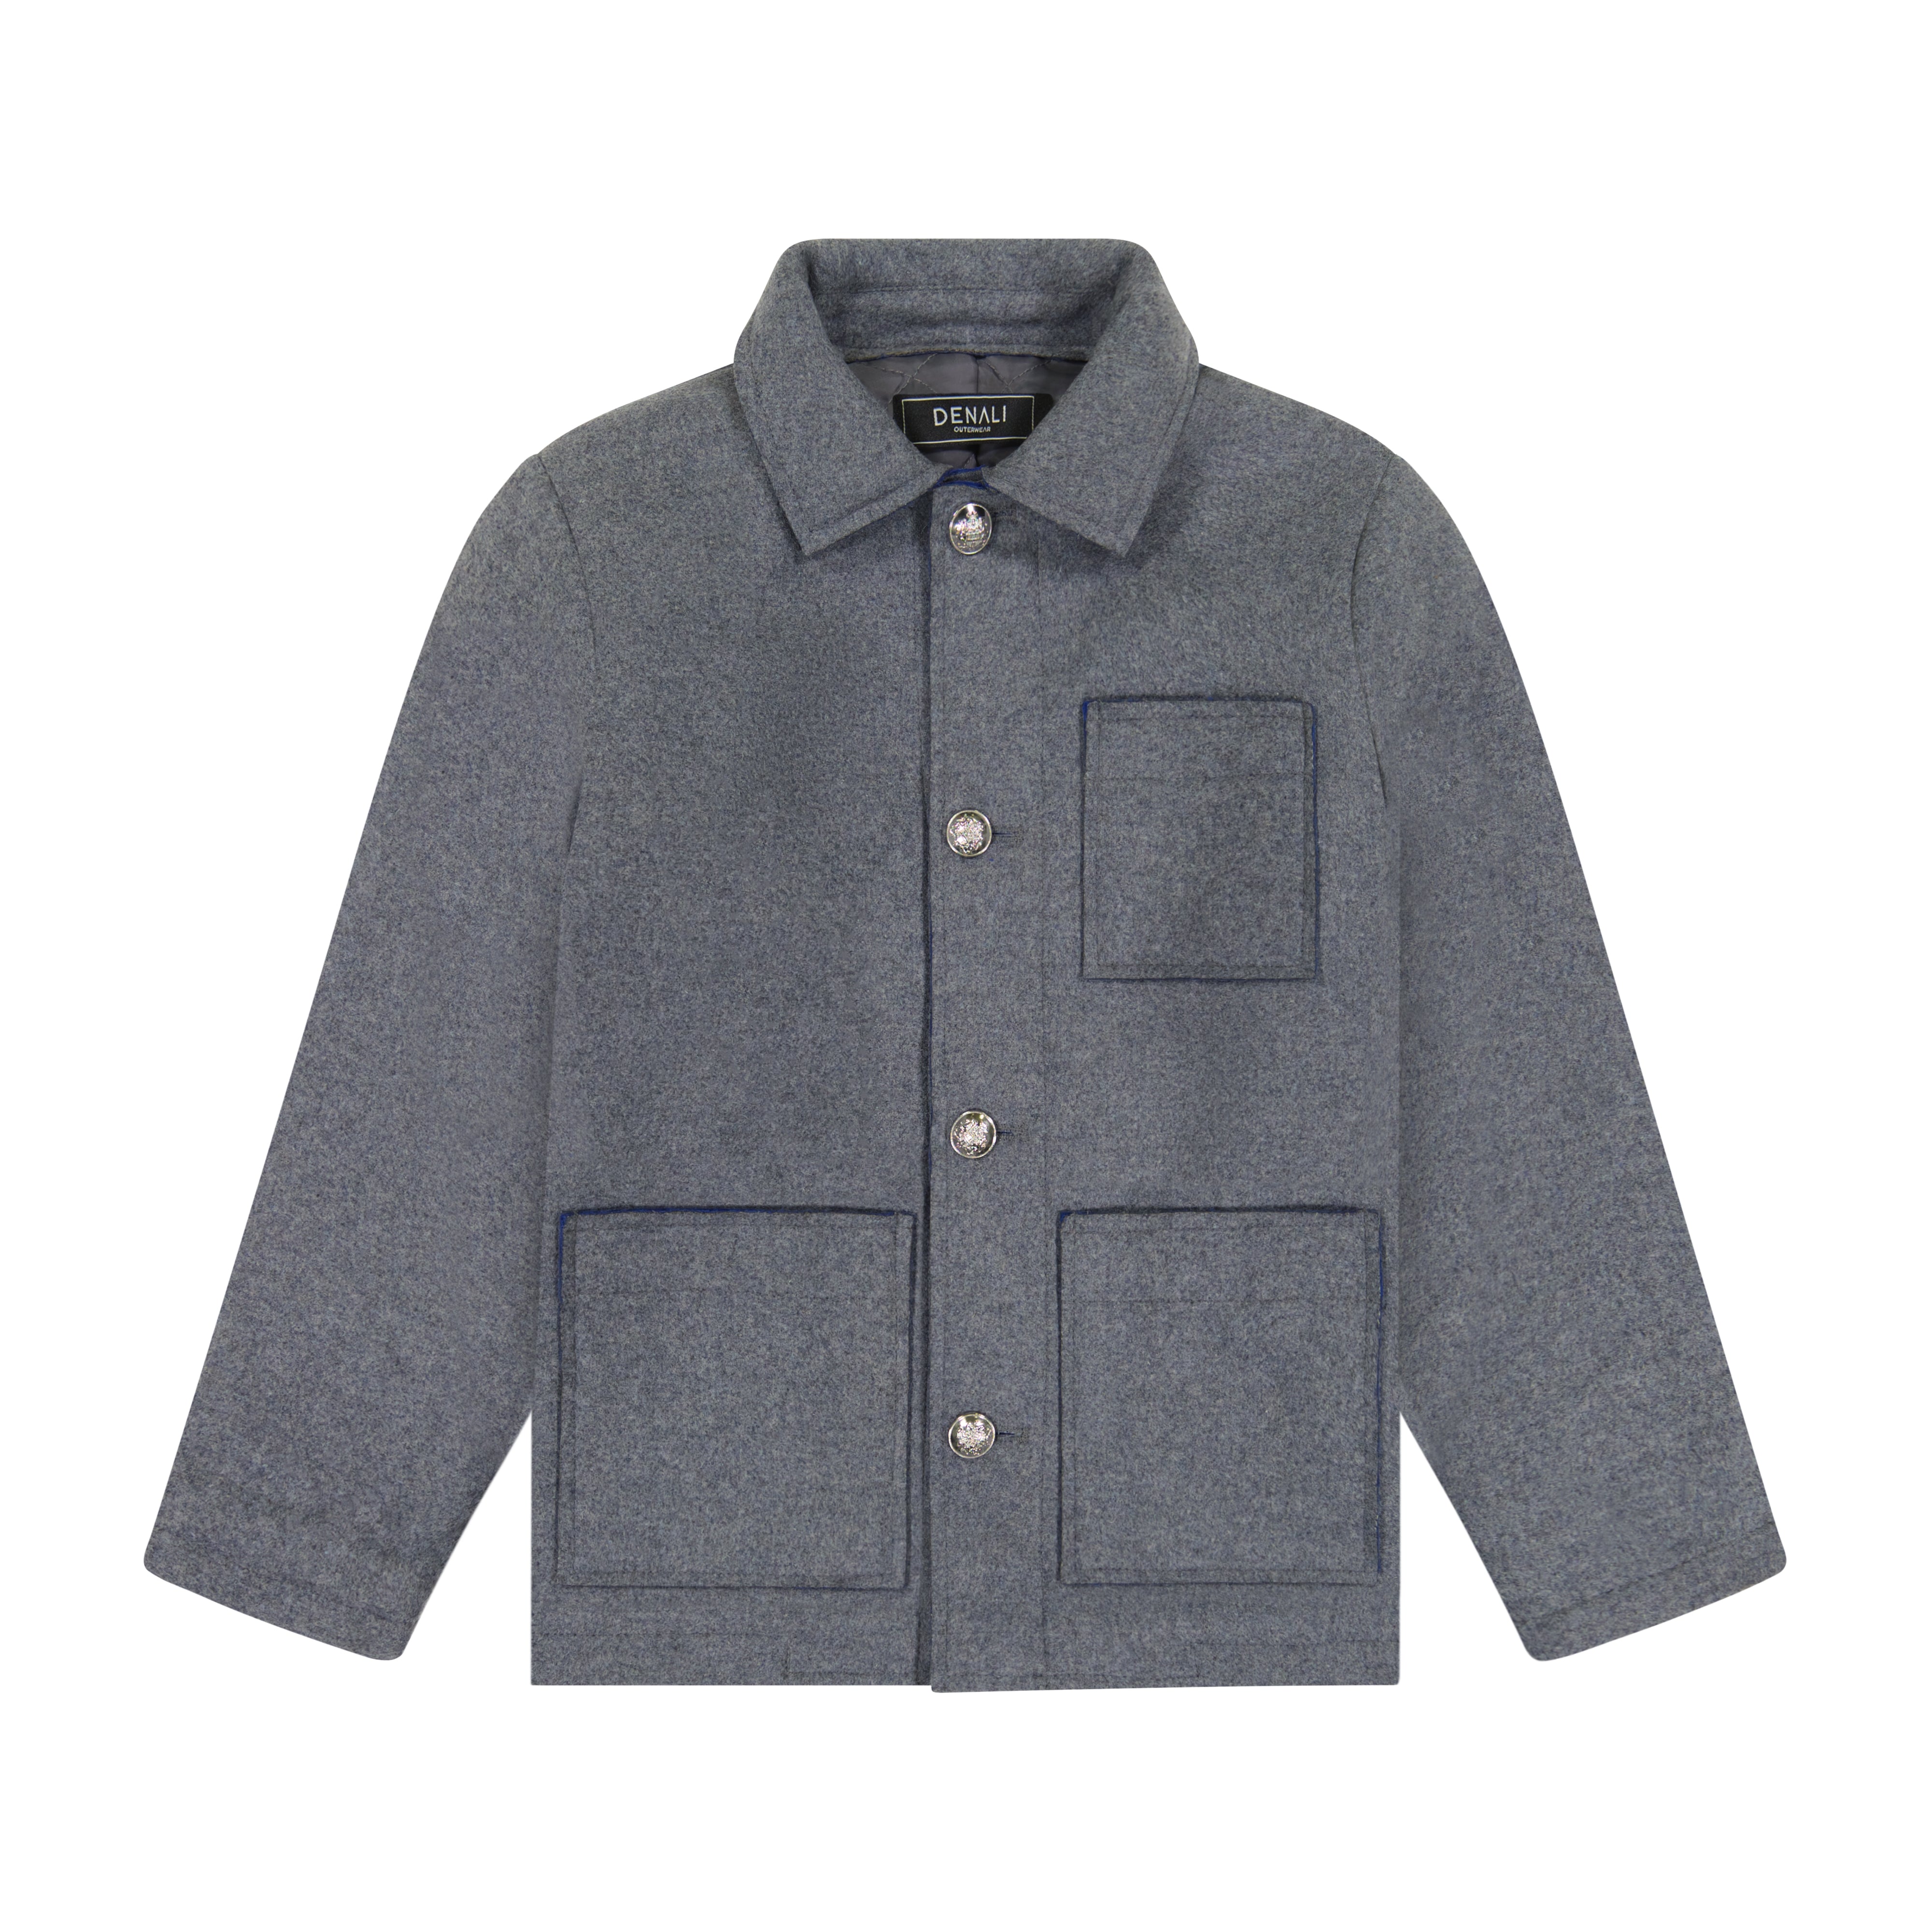 Denali Wool Jacket - Gray/cobalt